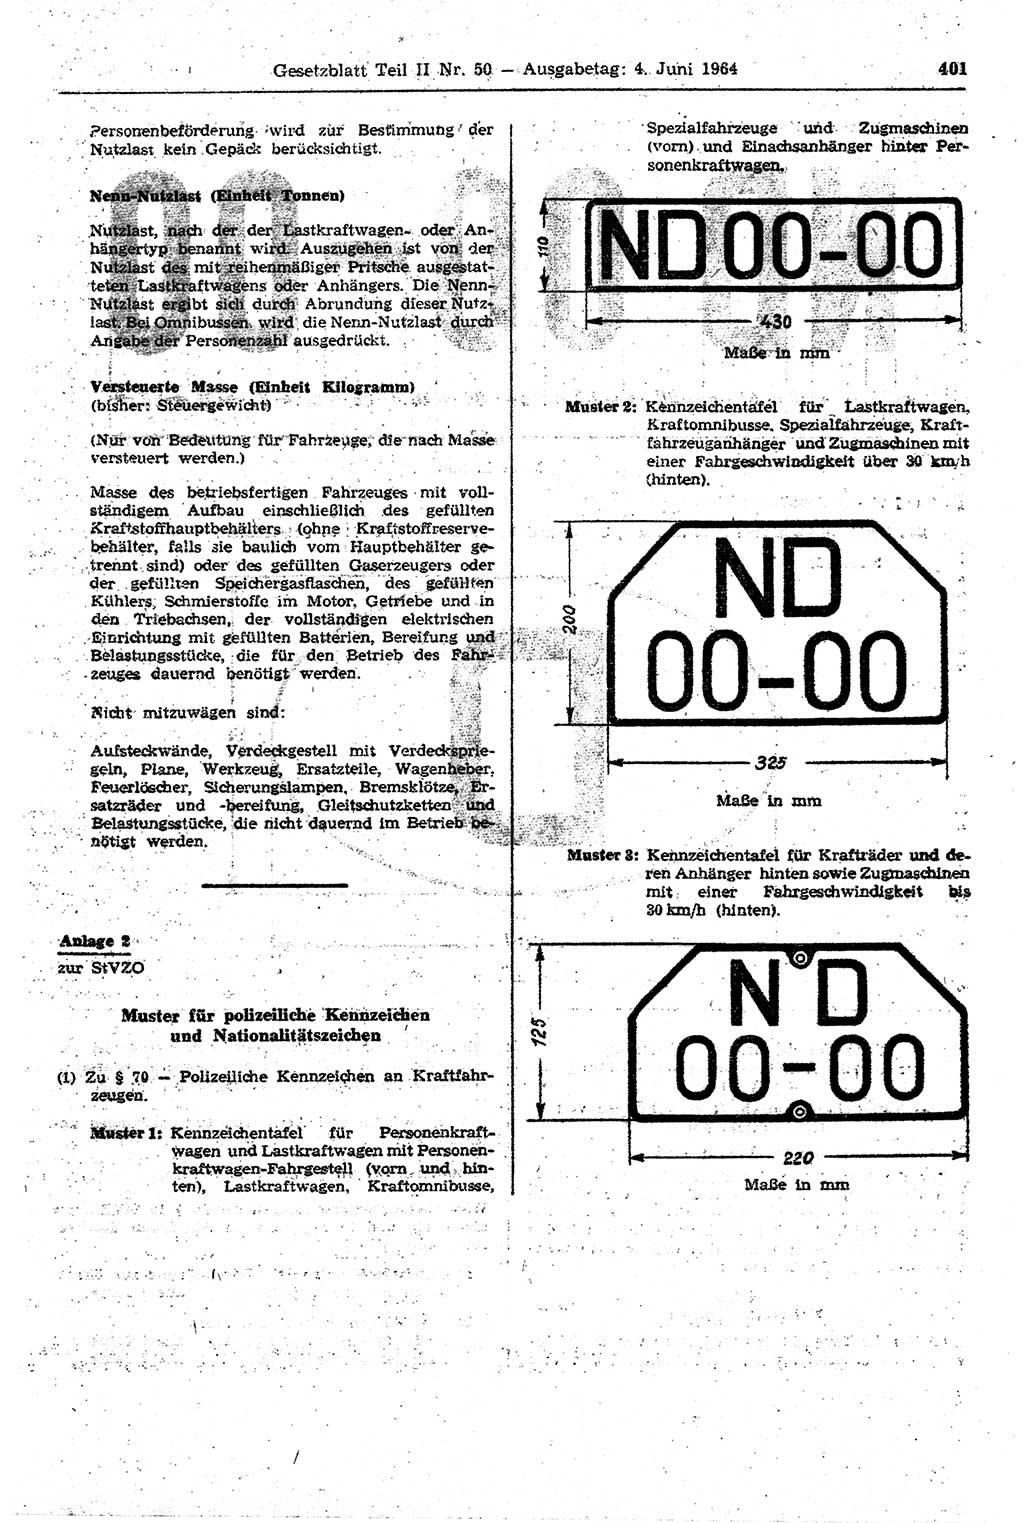 Gesetzblatt (GBl.) der Deutschen Demokratischen Republik (DDR) Teil ⅠⅠ 1964, Seite 401 (GBl. DDR ⅠⅠ 1964, S. 401)